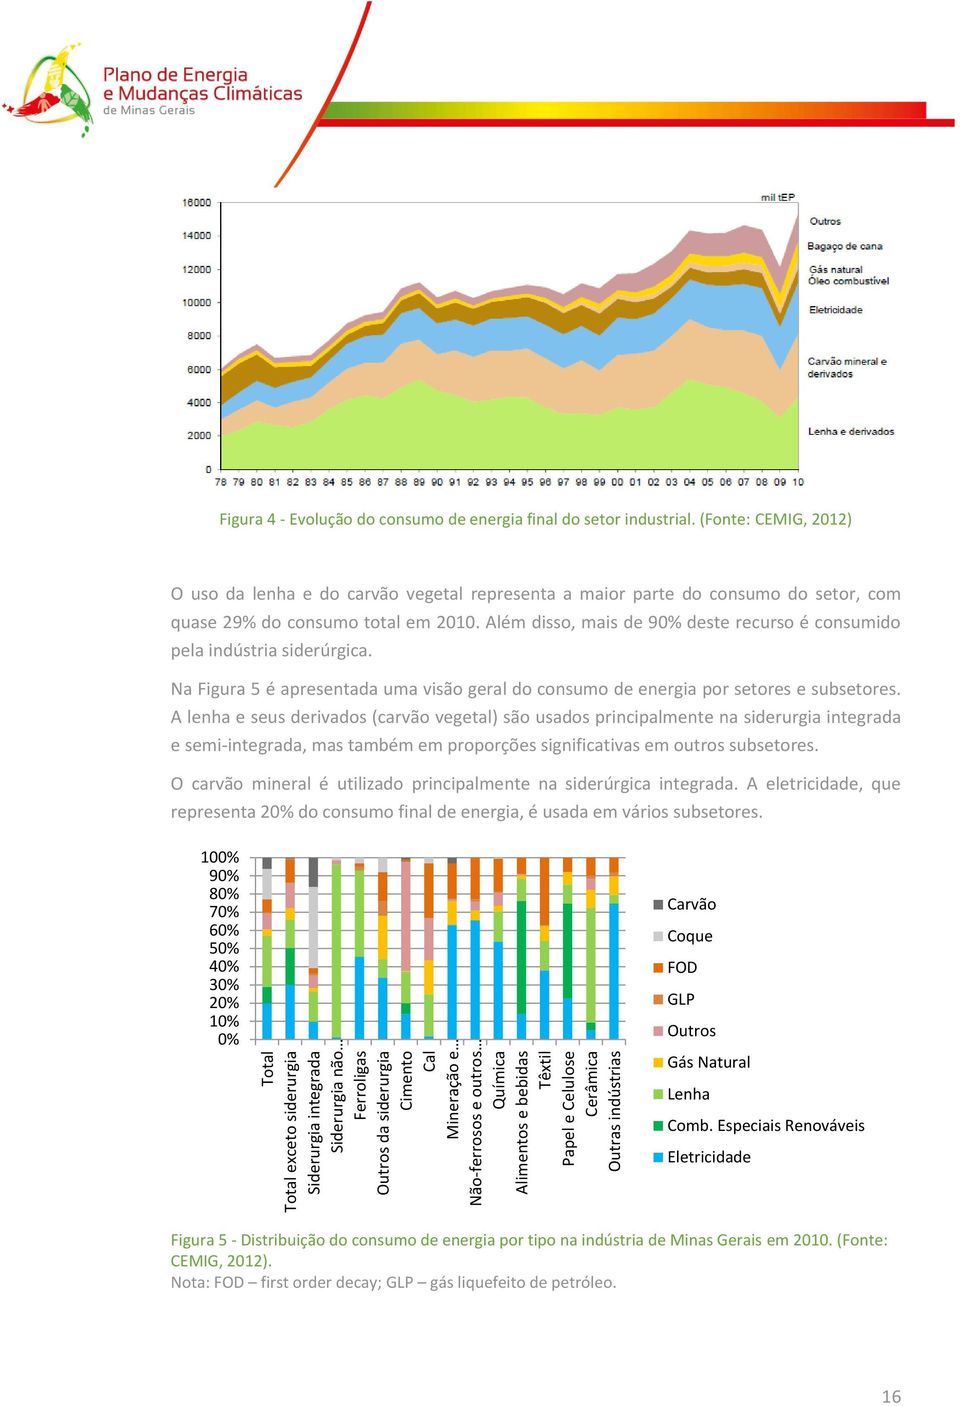 (Fonte: CEMIG, 2012) O uso da lenha e do carvão vegetal representa a maior parte do consumo do setor, com quase 29% do consumo total em 2010.